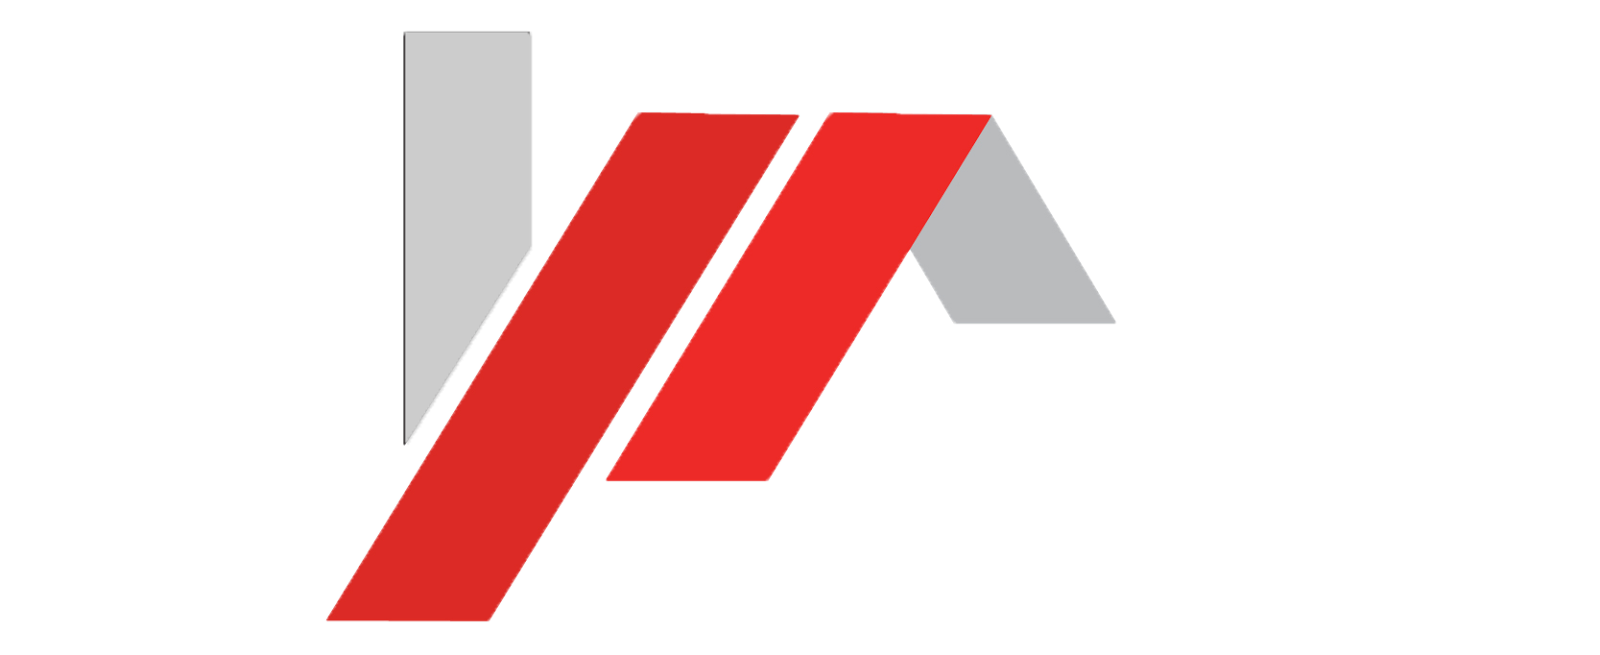 Tebar Diary